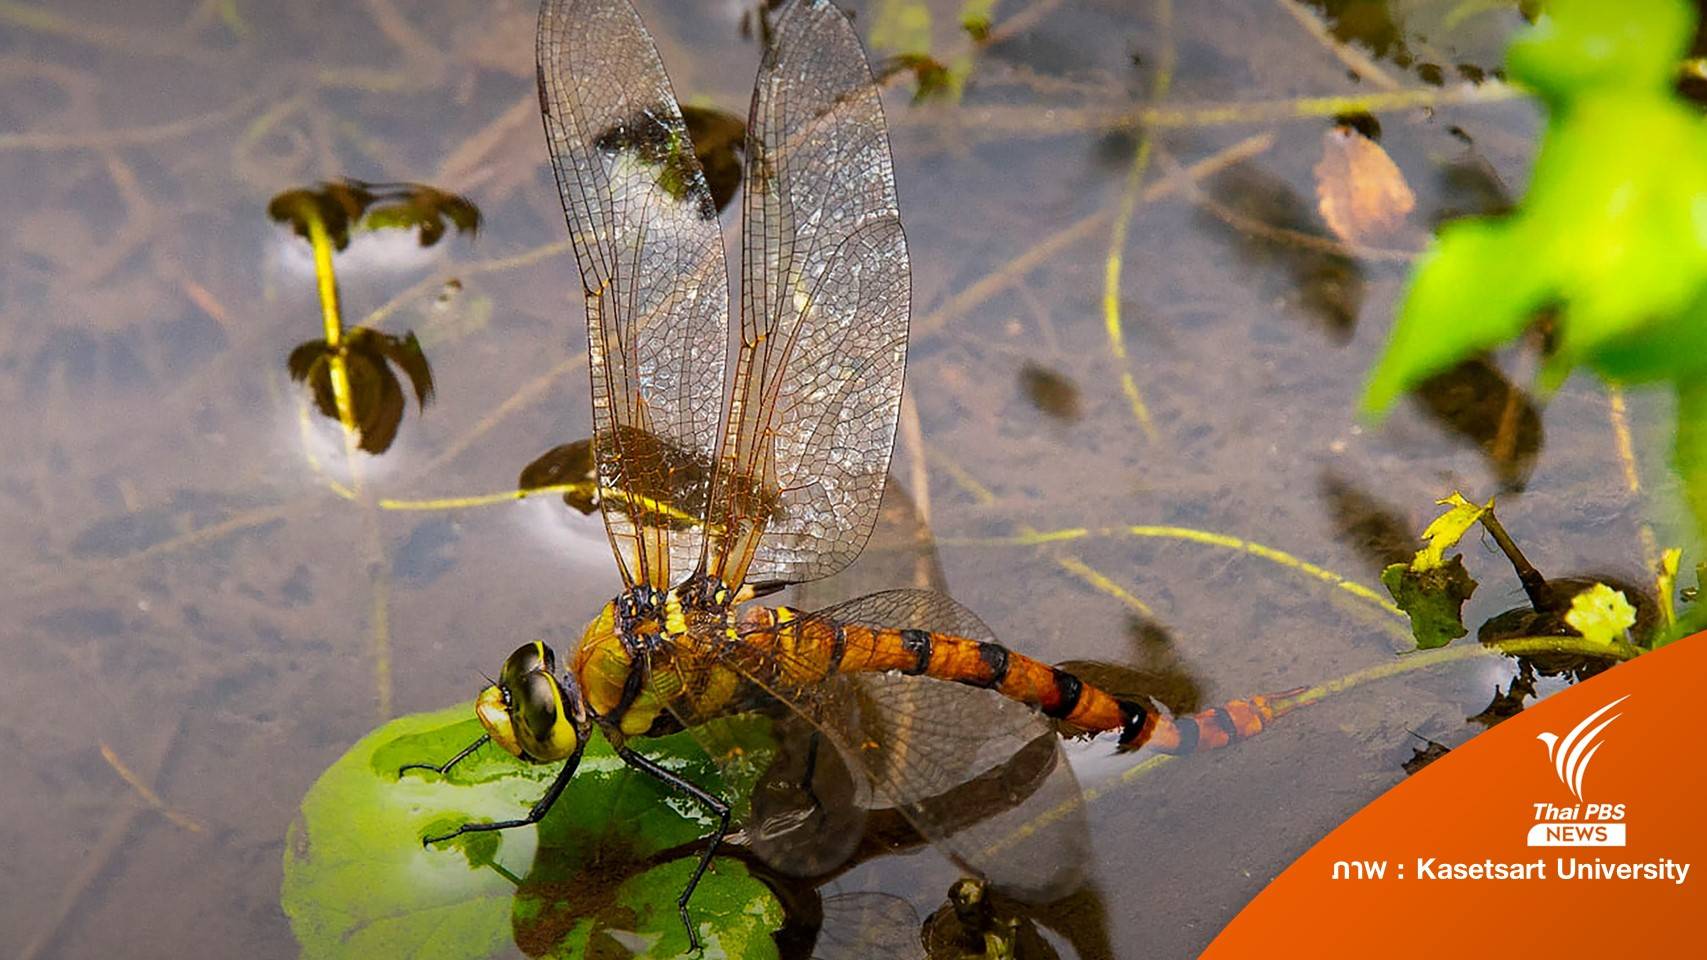 นักวิจัยไทยค้นพบ "แมลงปอยักษ์เขียวท้องส้ม" 